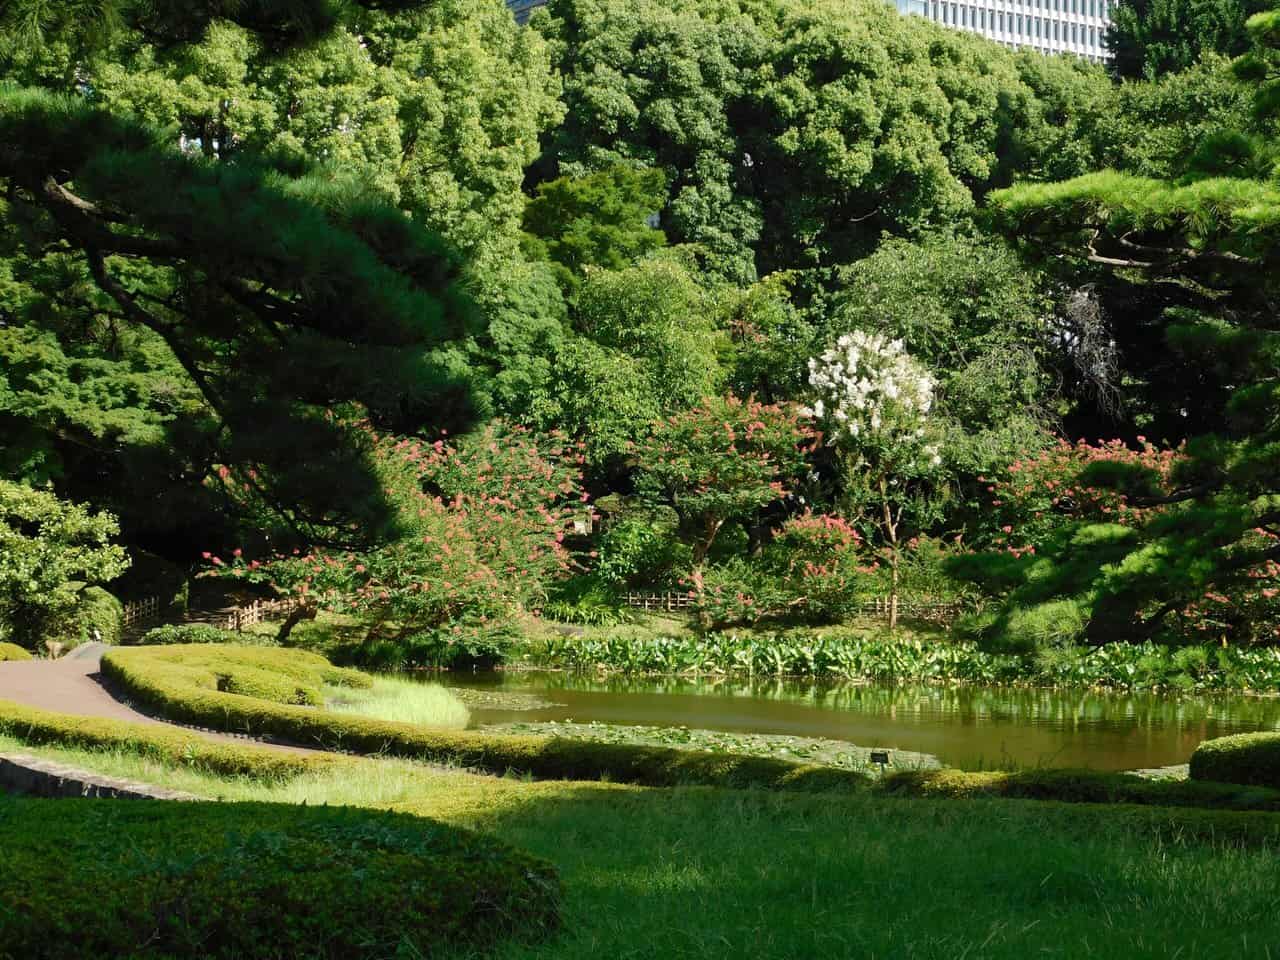 Pond of the Ninomaru Garden.